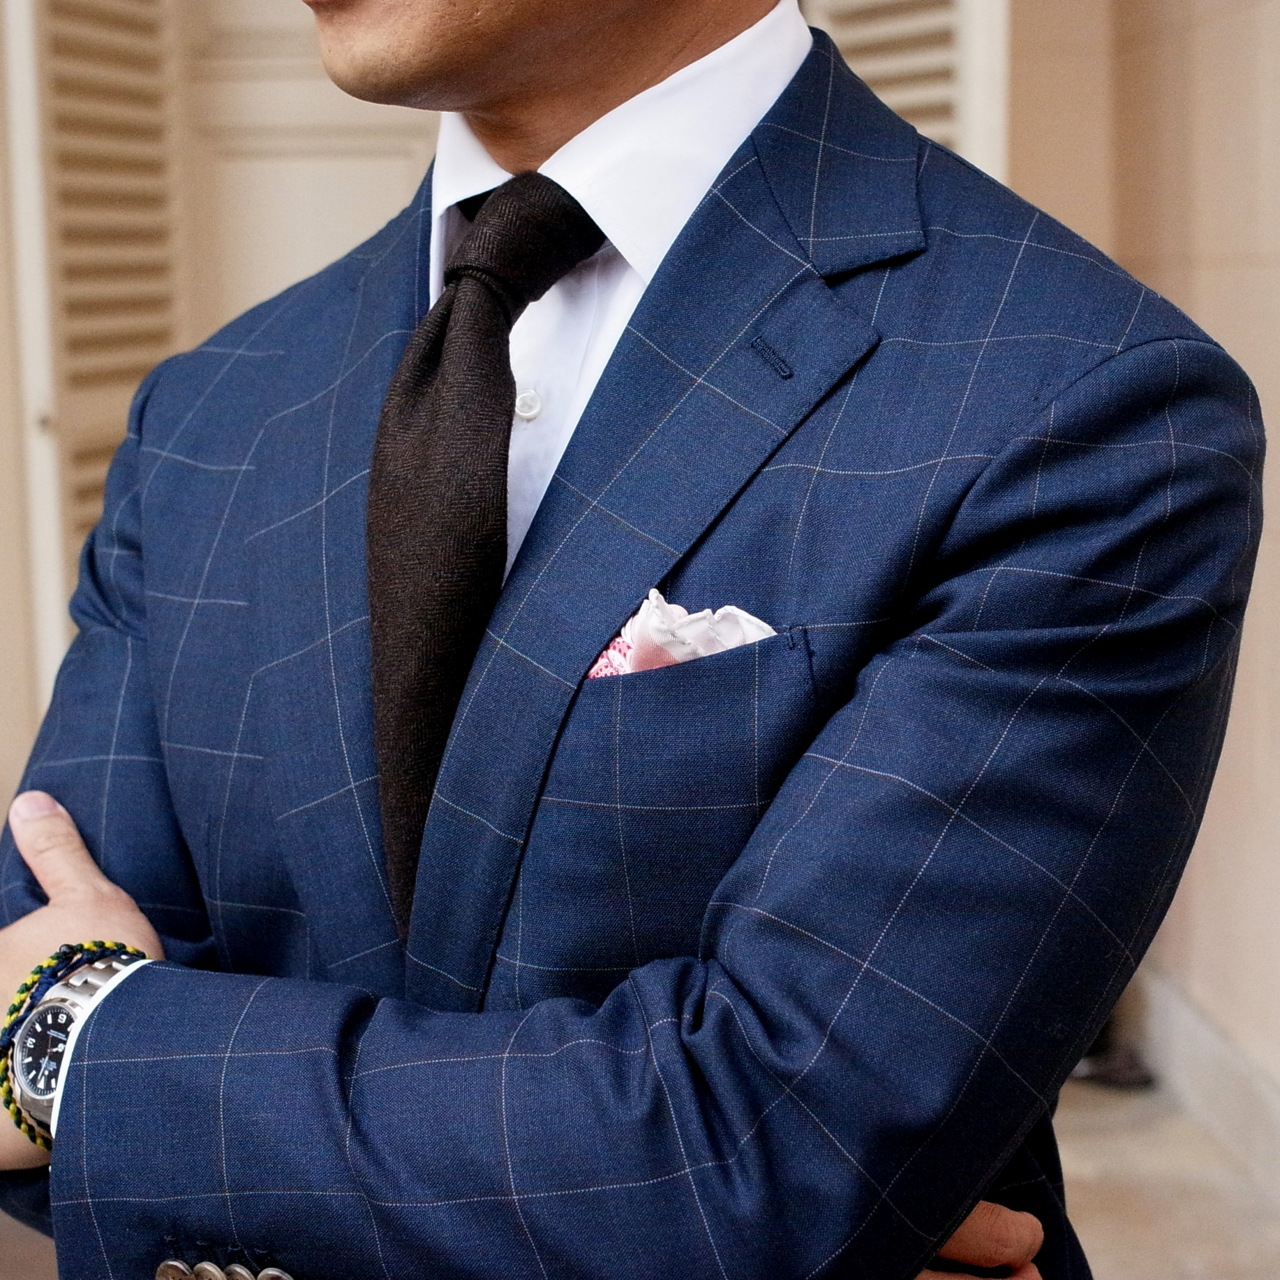 navy-blue-suit-dark-brown-tie-fashion-men.jpg